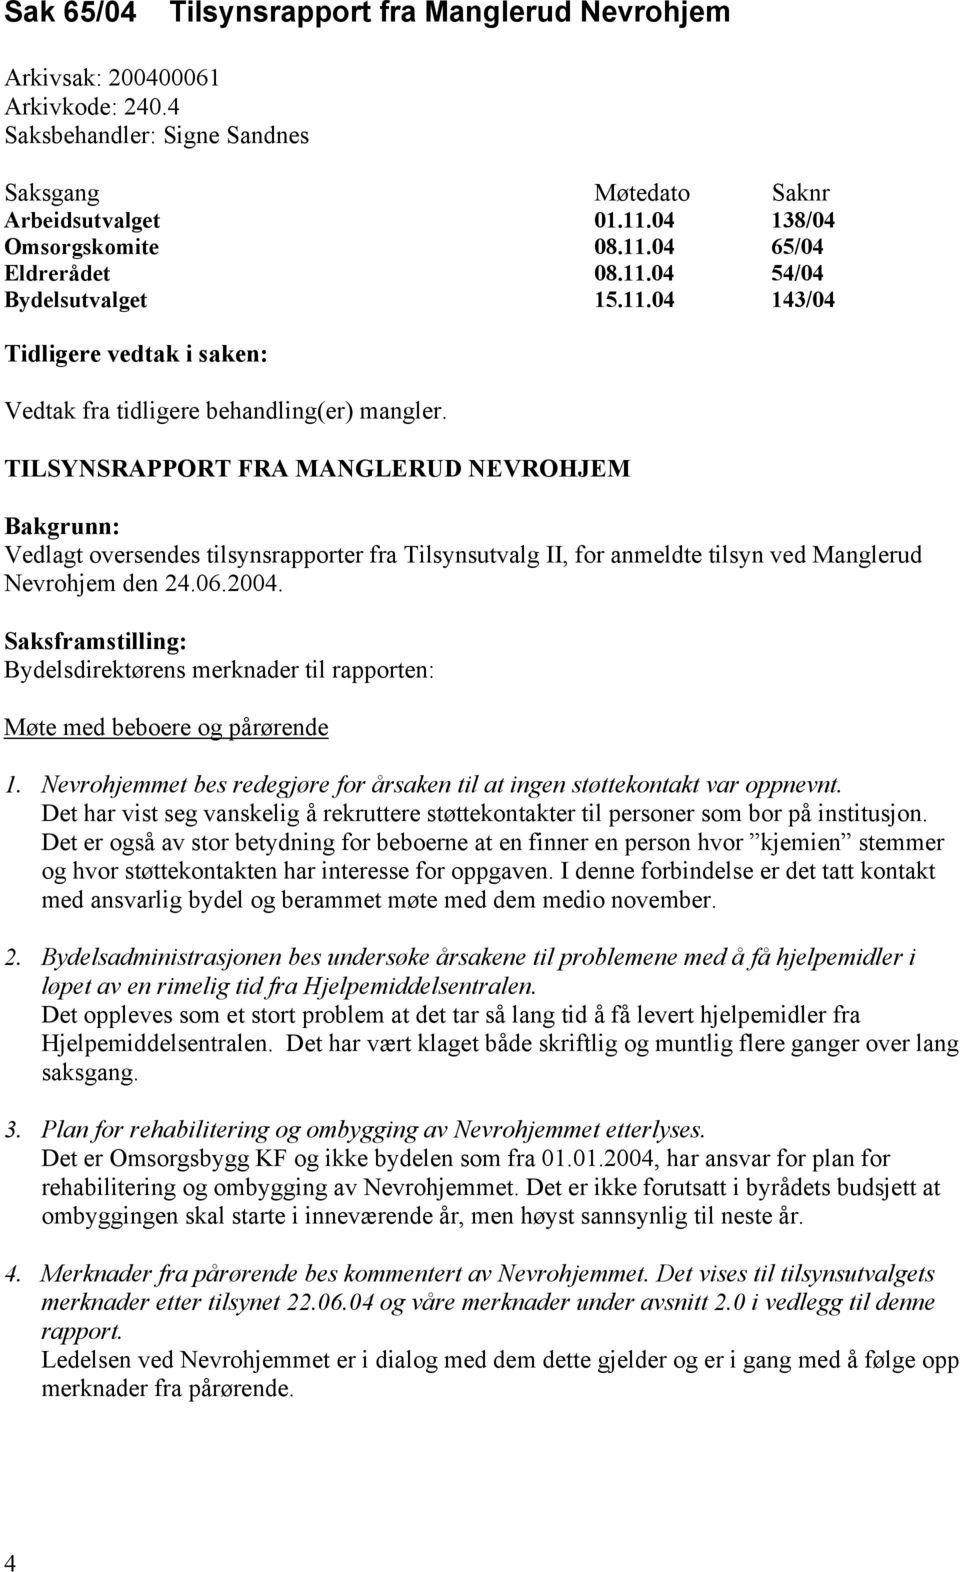 TILSYNSRAPPORT FRA MANGLERUD NEVROHJEM Bakgrunn: Vedlagt oversendes tilsynsrapporter fra Tilsynsutvalg II, for anmeldte tilsyn ved Manglerud Nevrohjem den 24.06.2004.